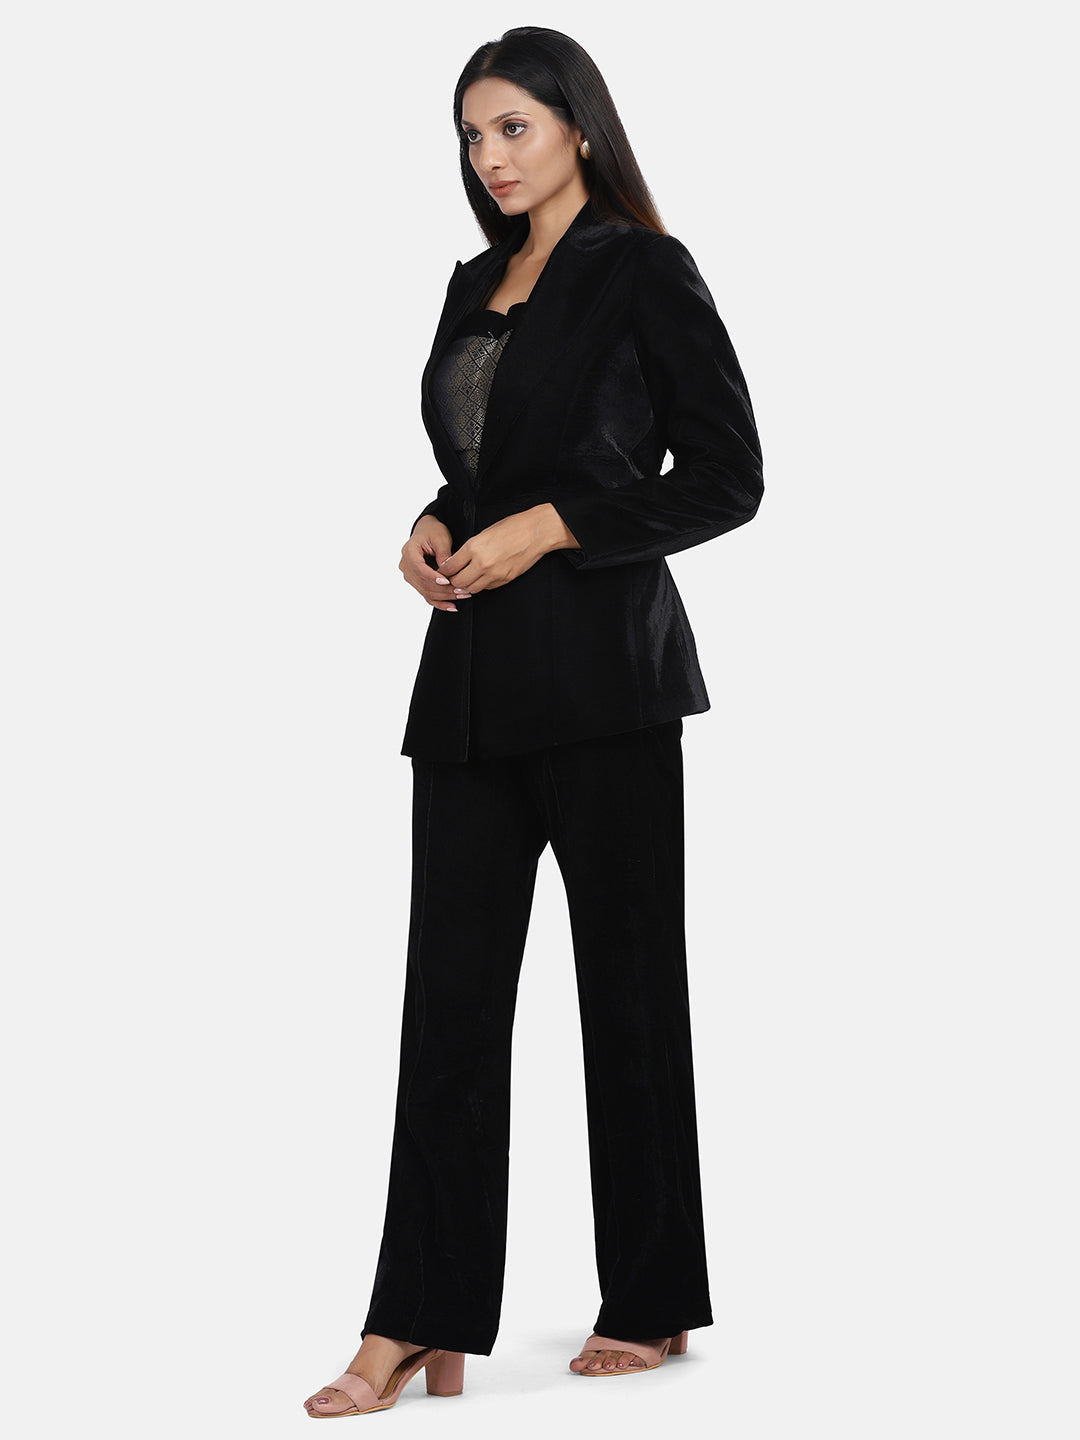 Black Velvet Suit With Pant